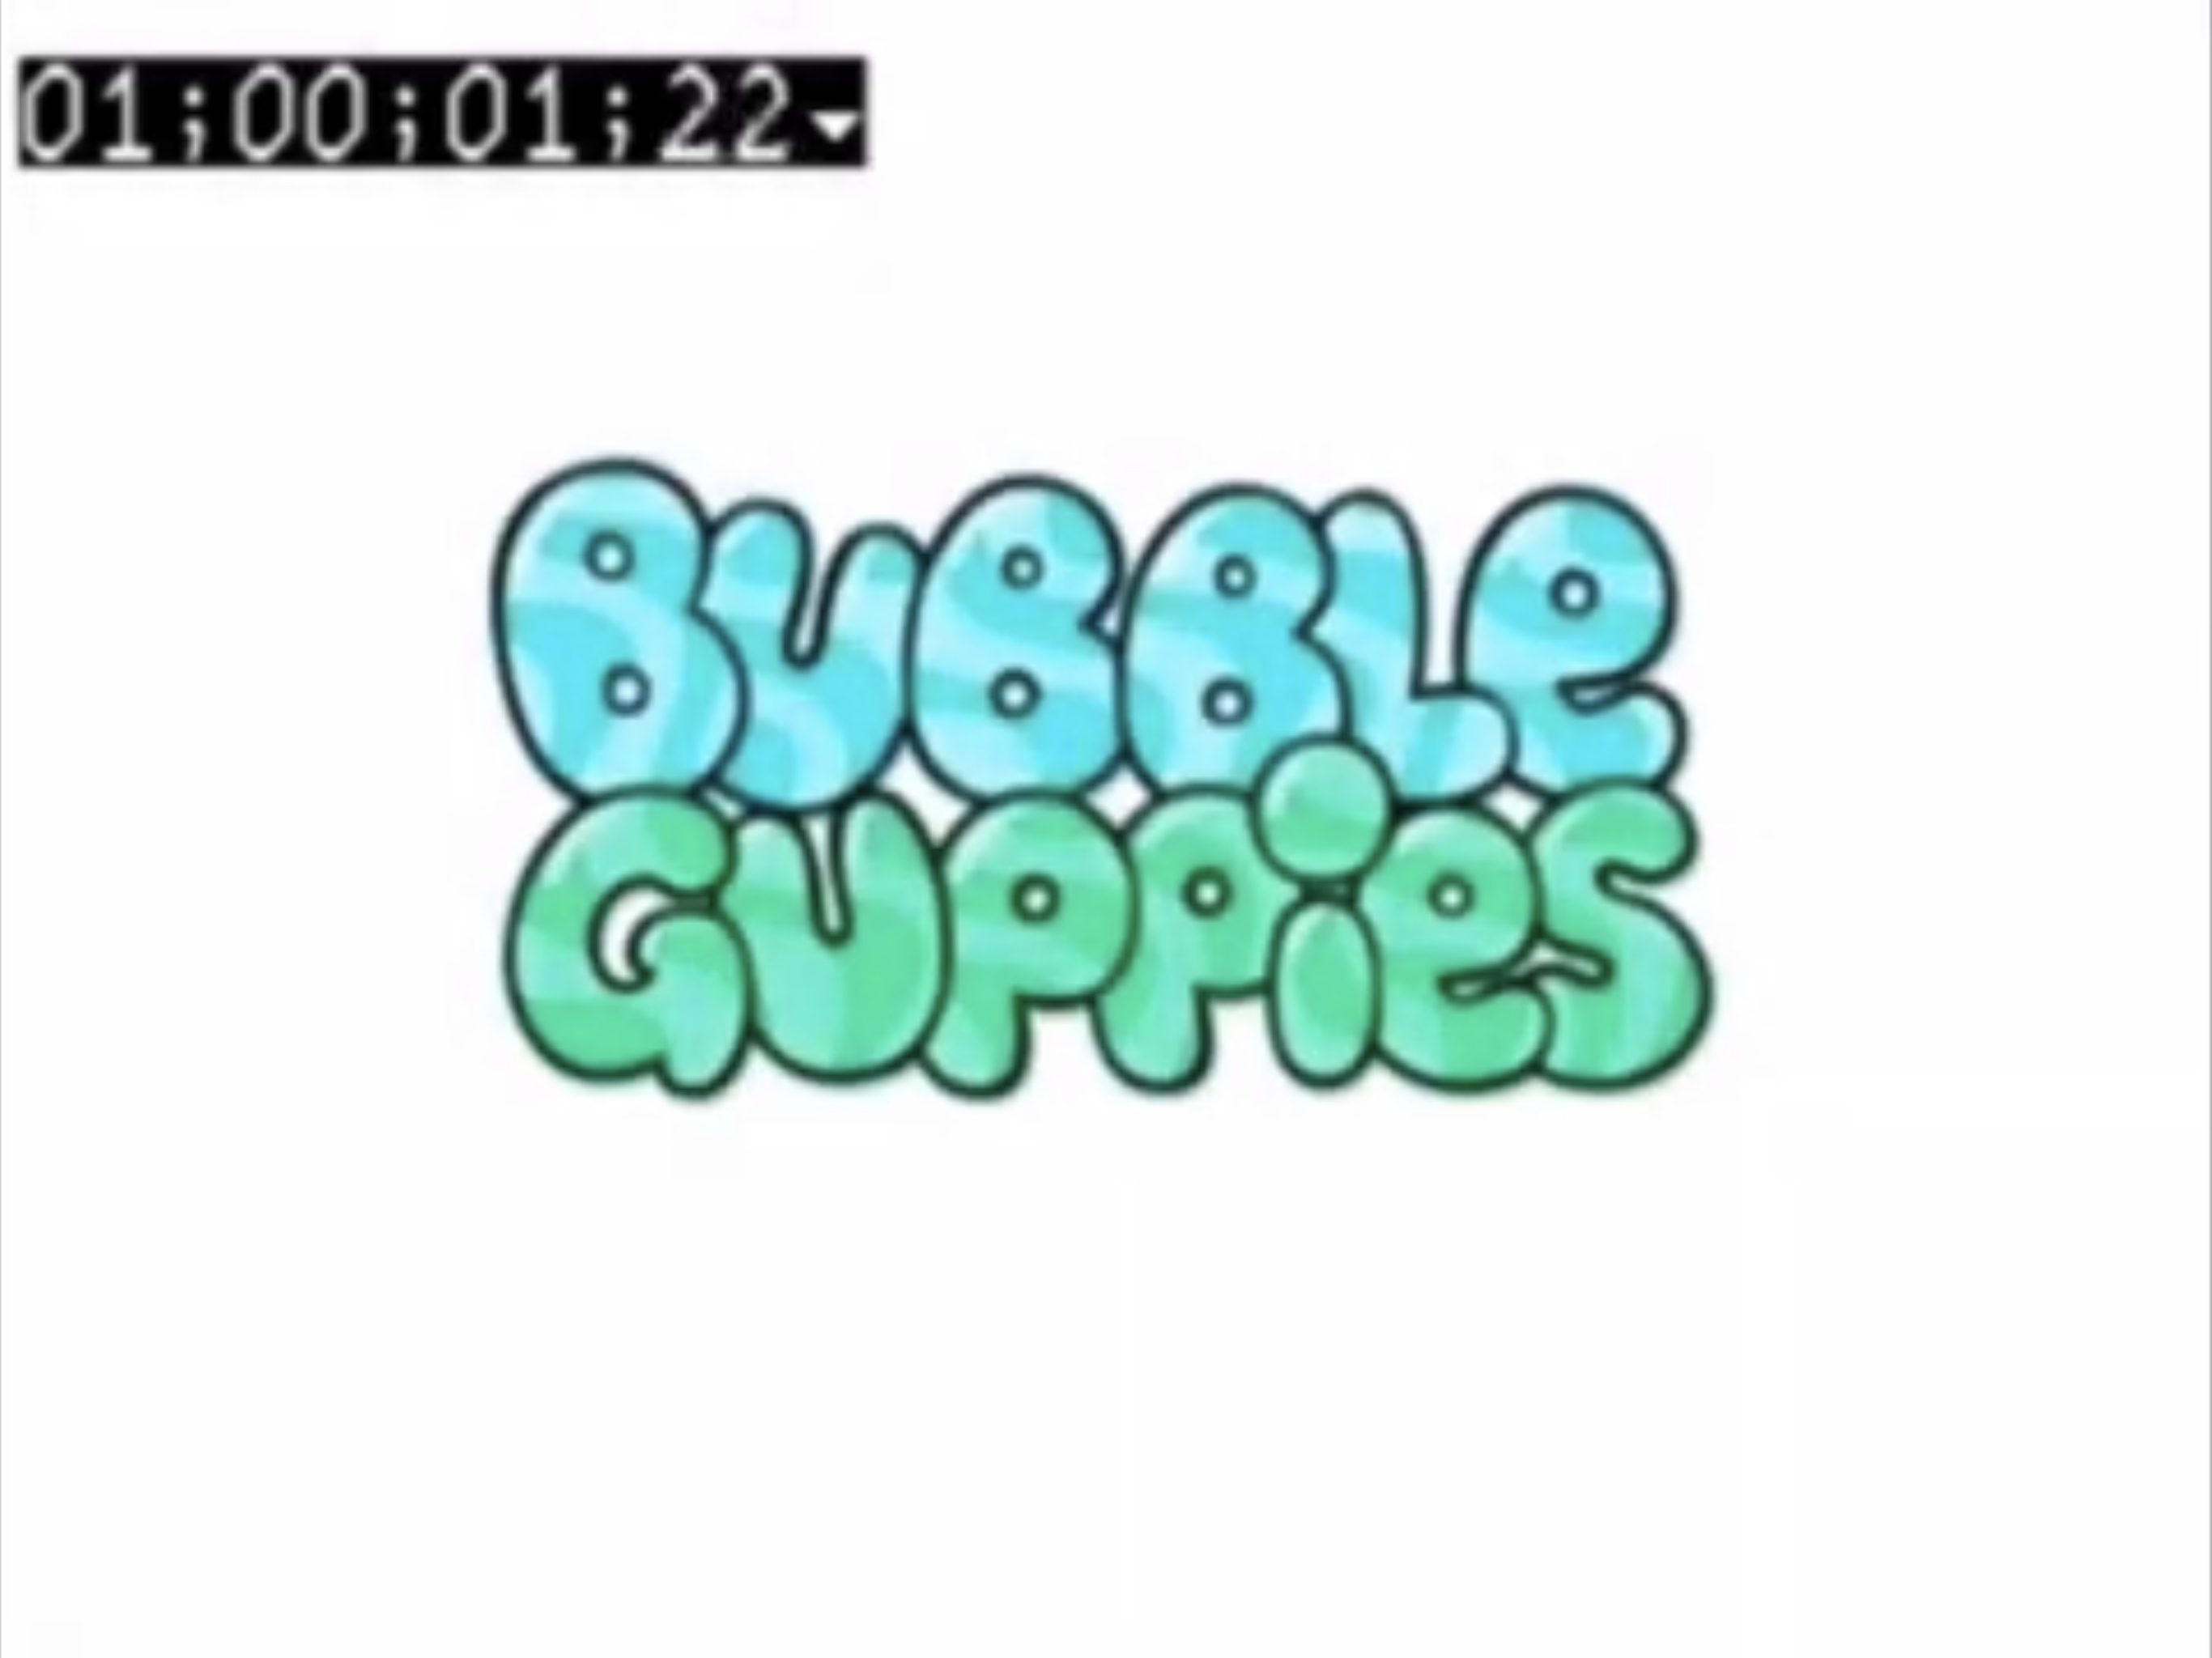 https://static.wikia.nocookie.net/iepfanon/images/d/de/Bubble_Guppies_Pilot_-_logo_%28English%29.png/revision/latest?cb=20230917131130